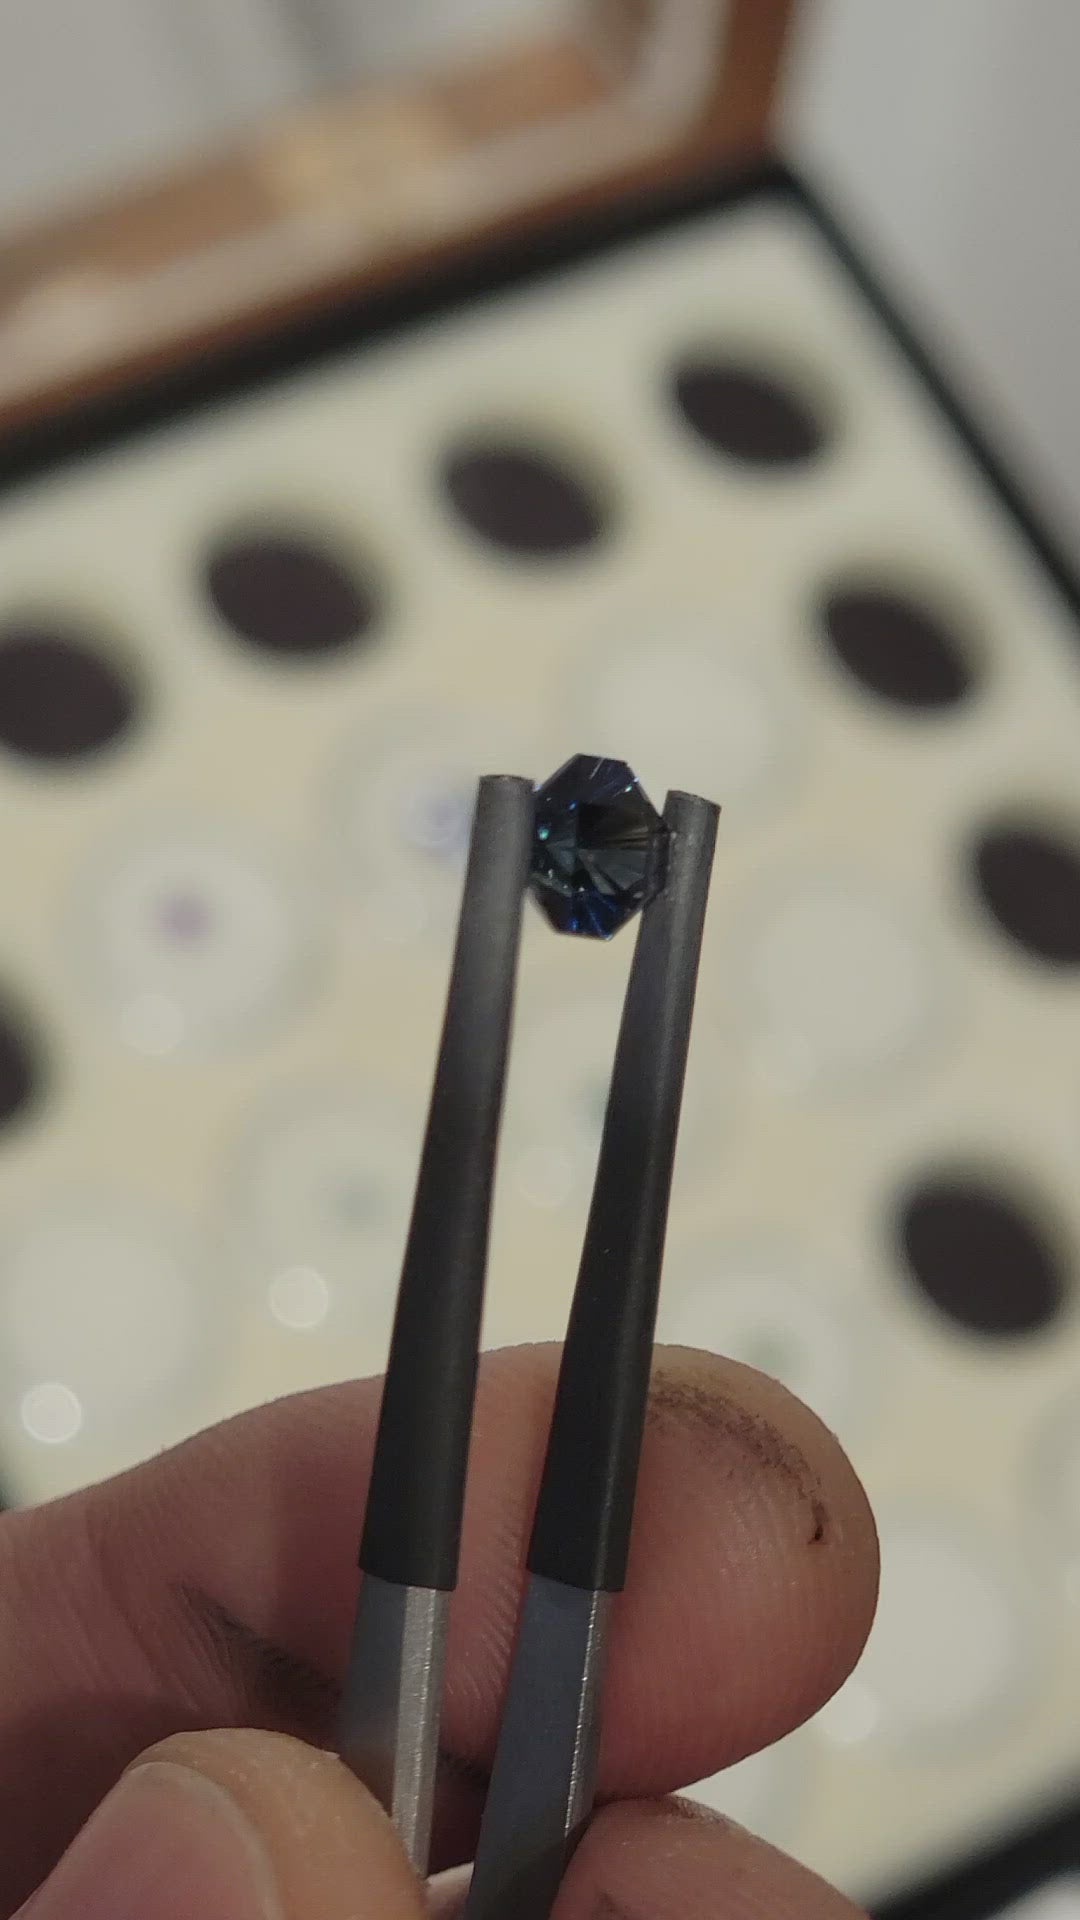 Parti saphir octogone - 1,39 carats, taille fantaisie - saphir bleu profond - 6,2 x 5,8 mm